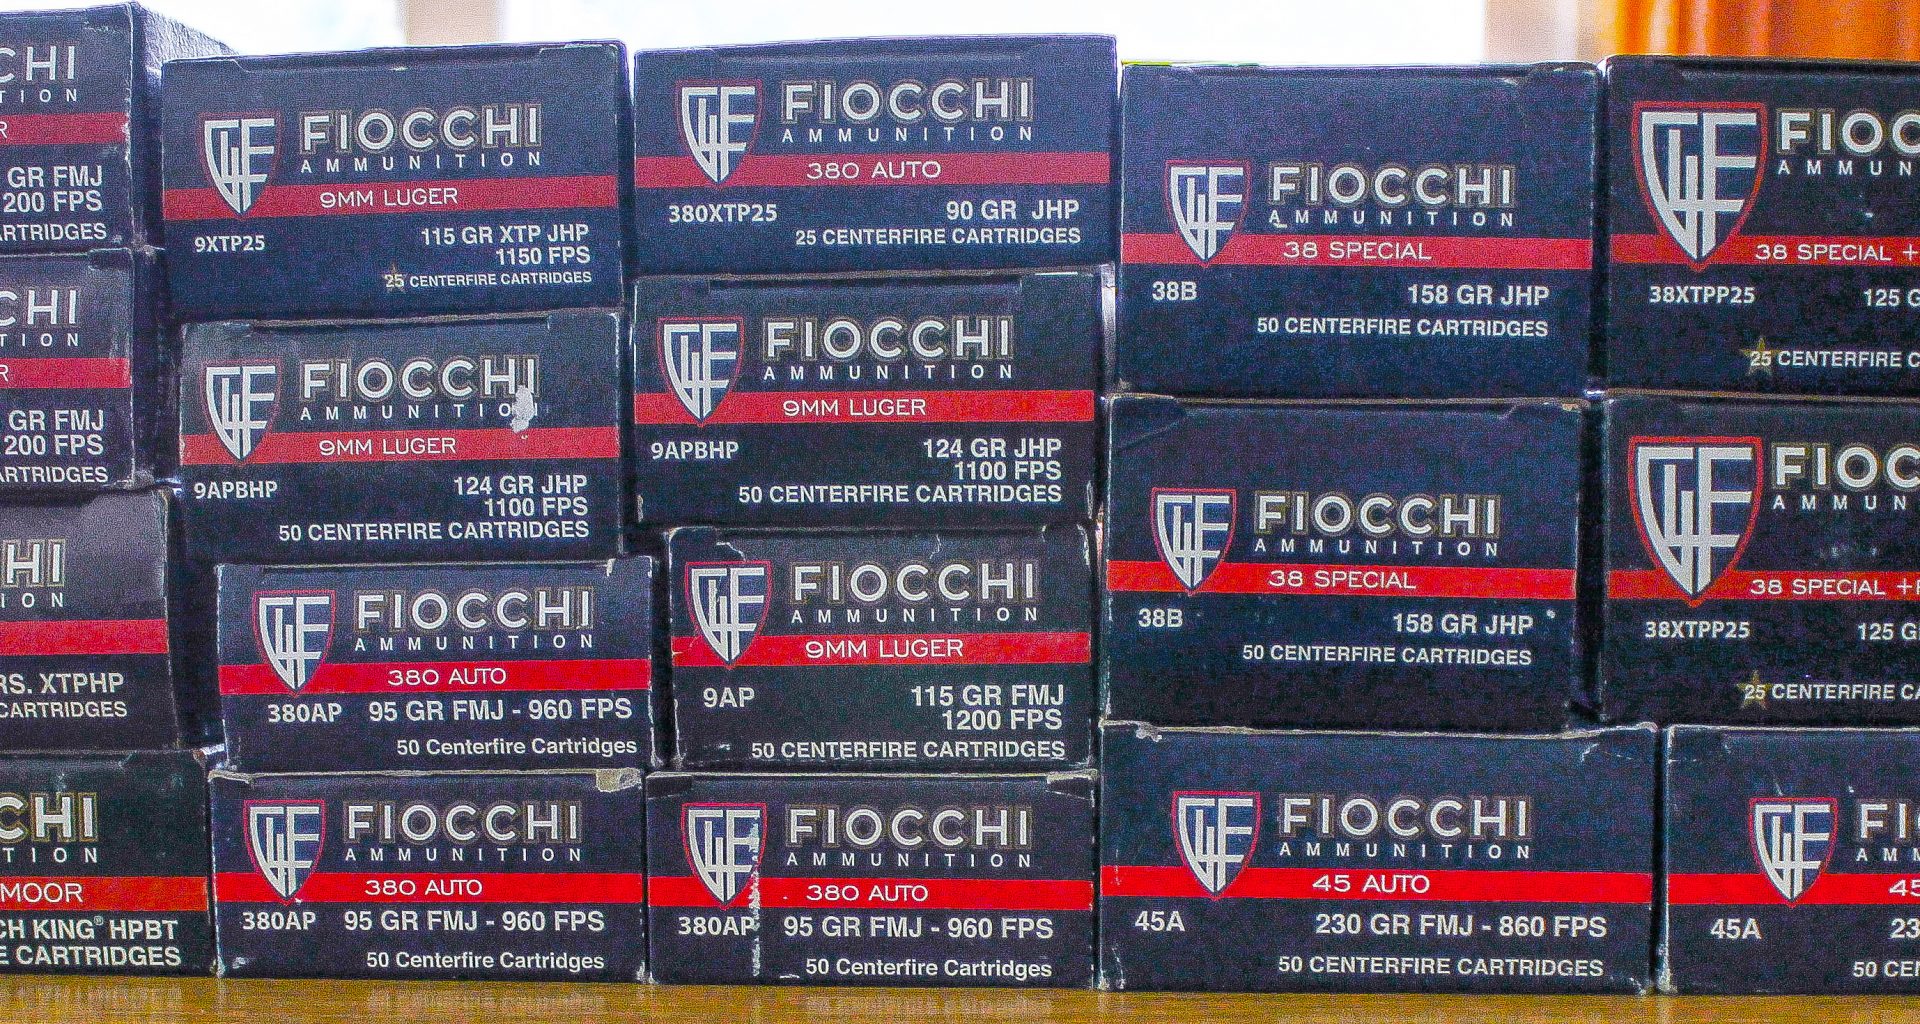 Fiocchi Ammo boxes